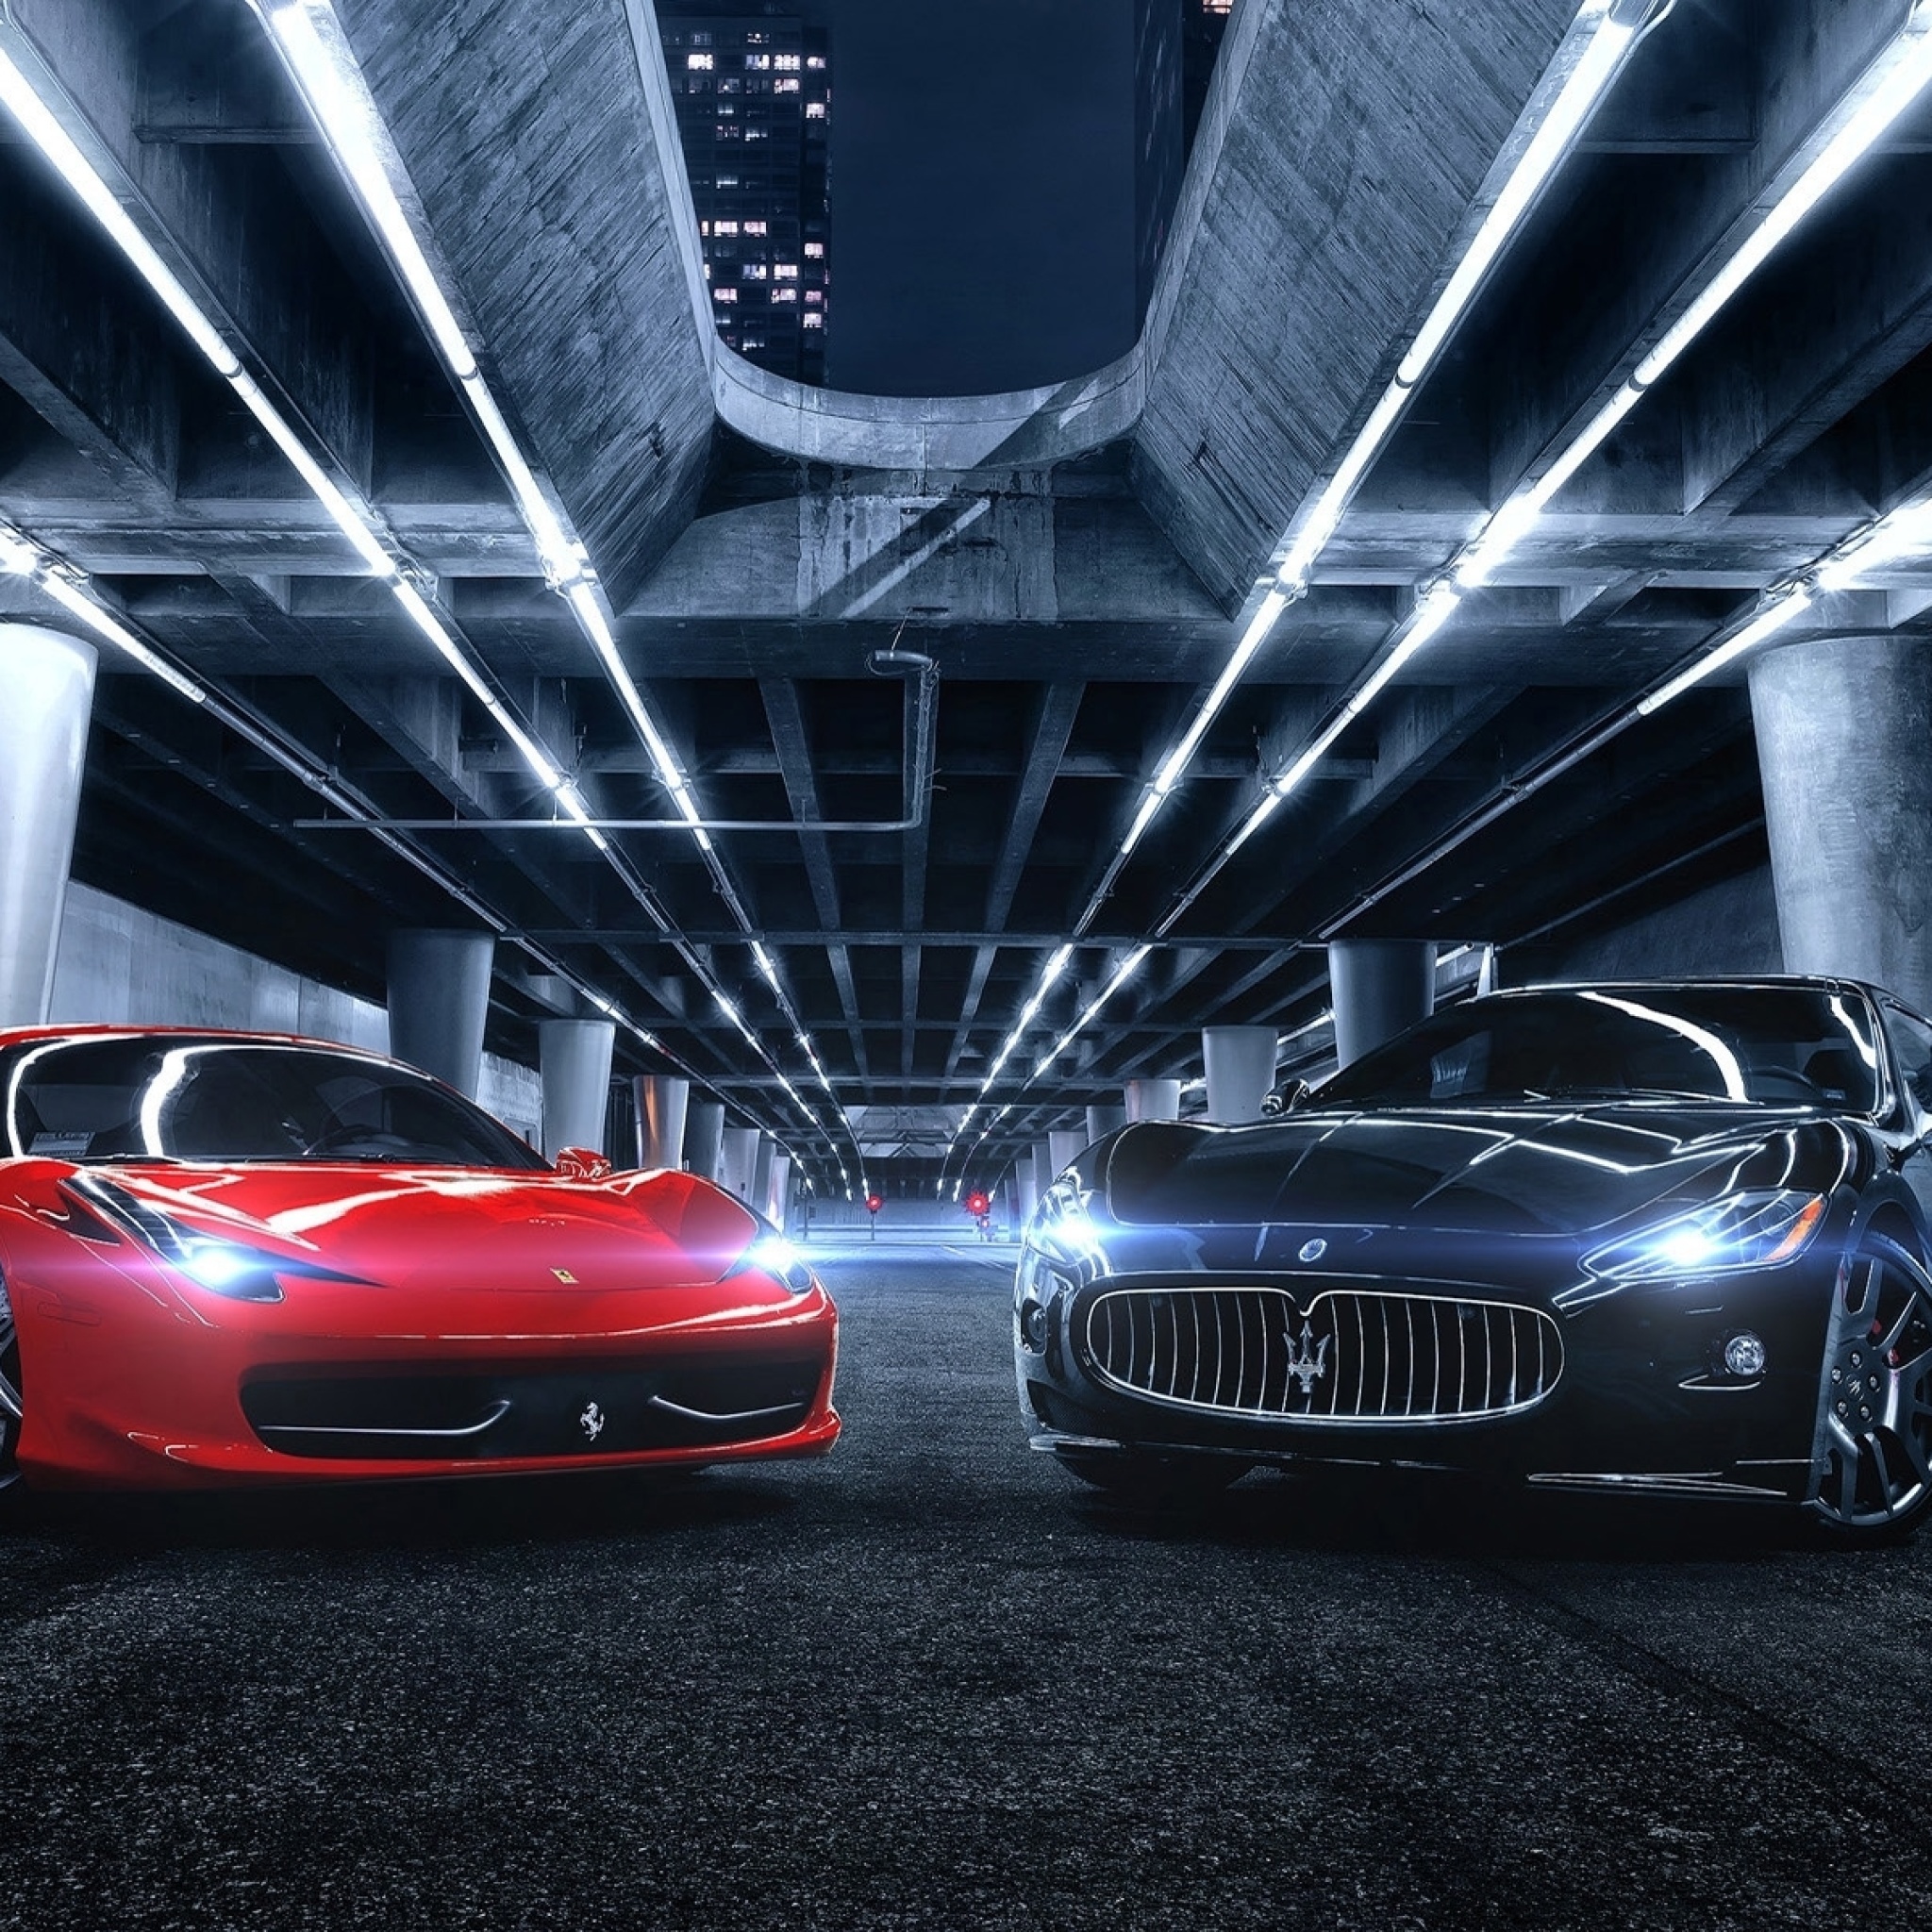 Das Ferrari compare Maserati Wallpaper 2048x2048